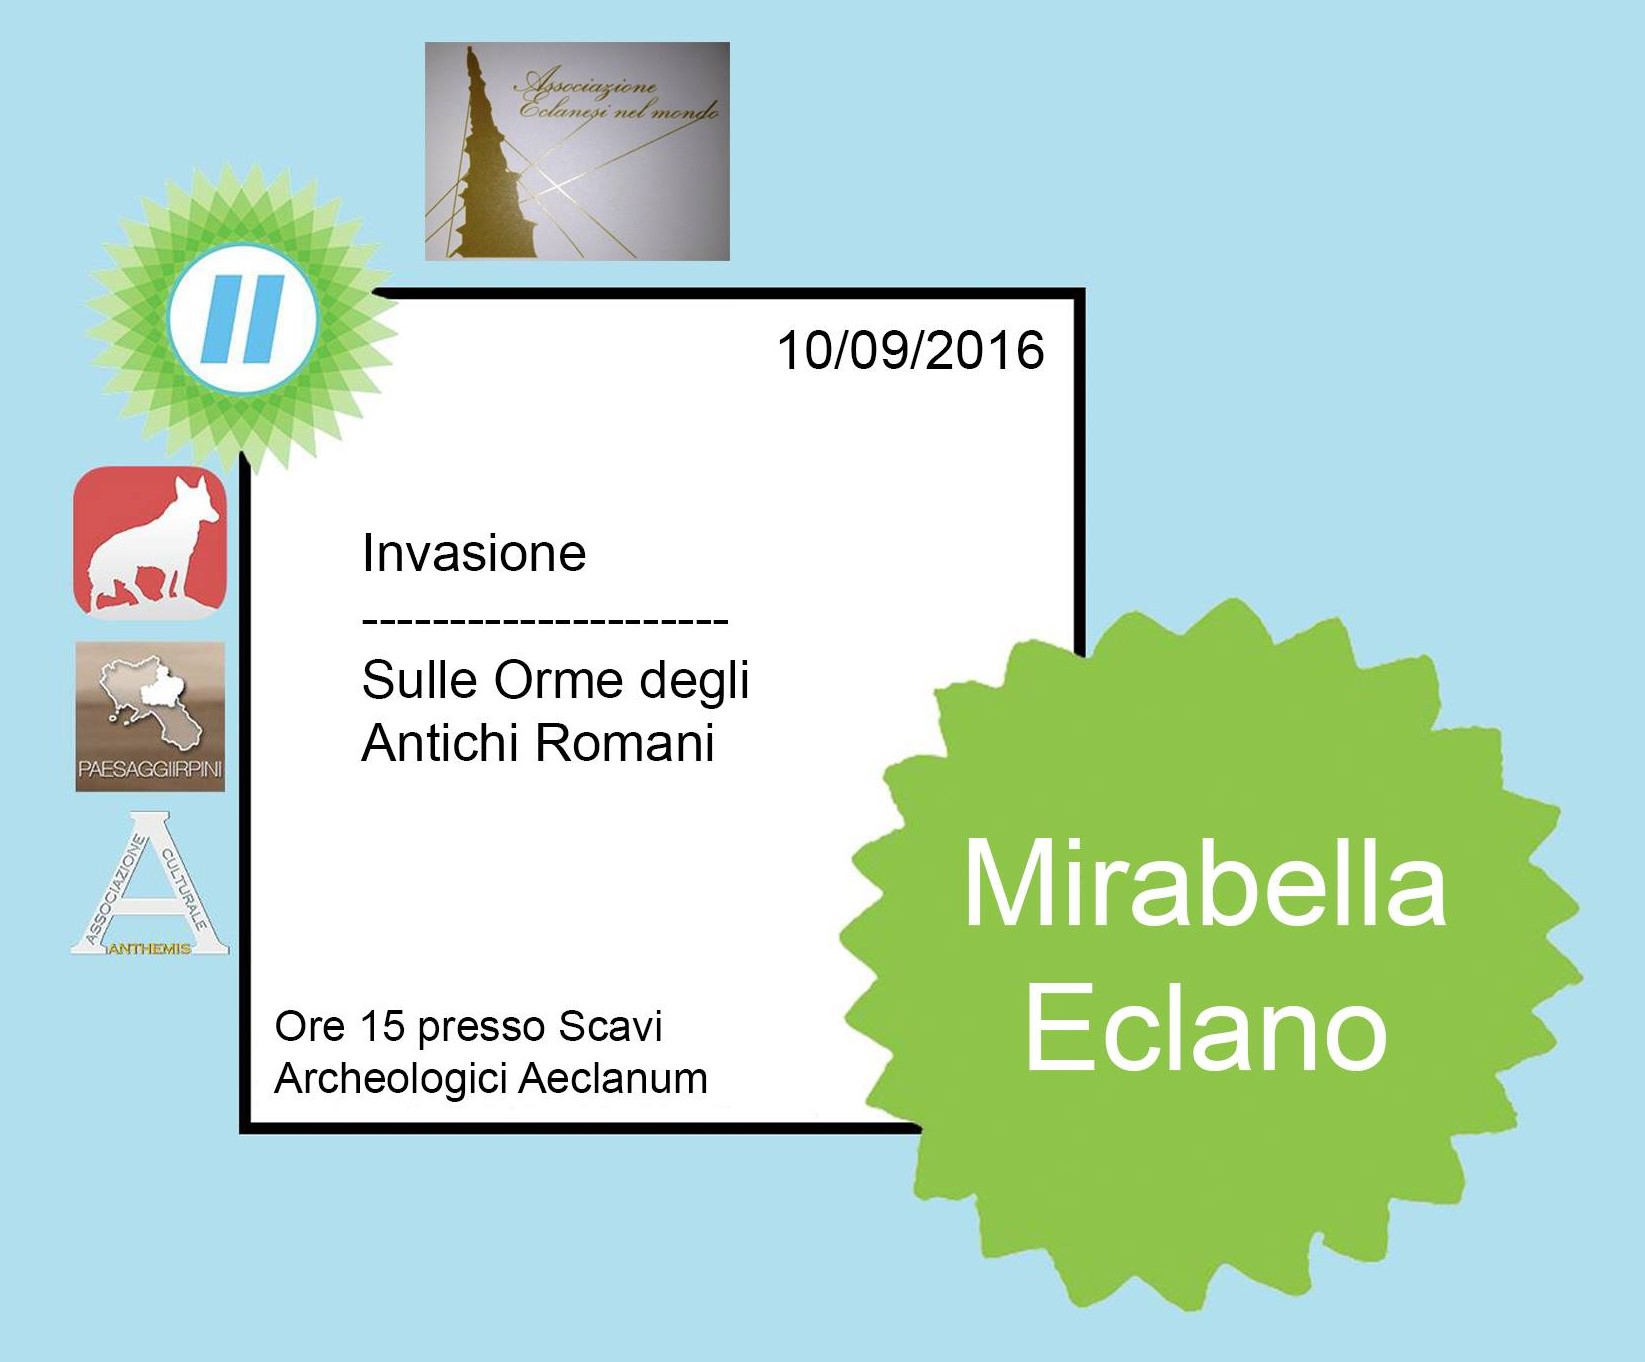 Invasioni Irpine a Mirabella Eclano: sulle orme degli antichi romani